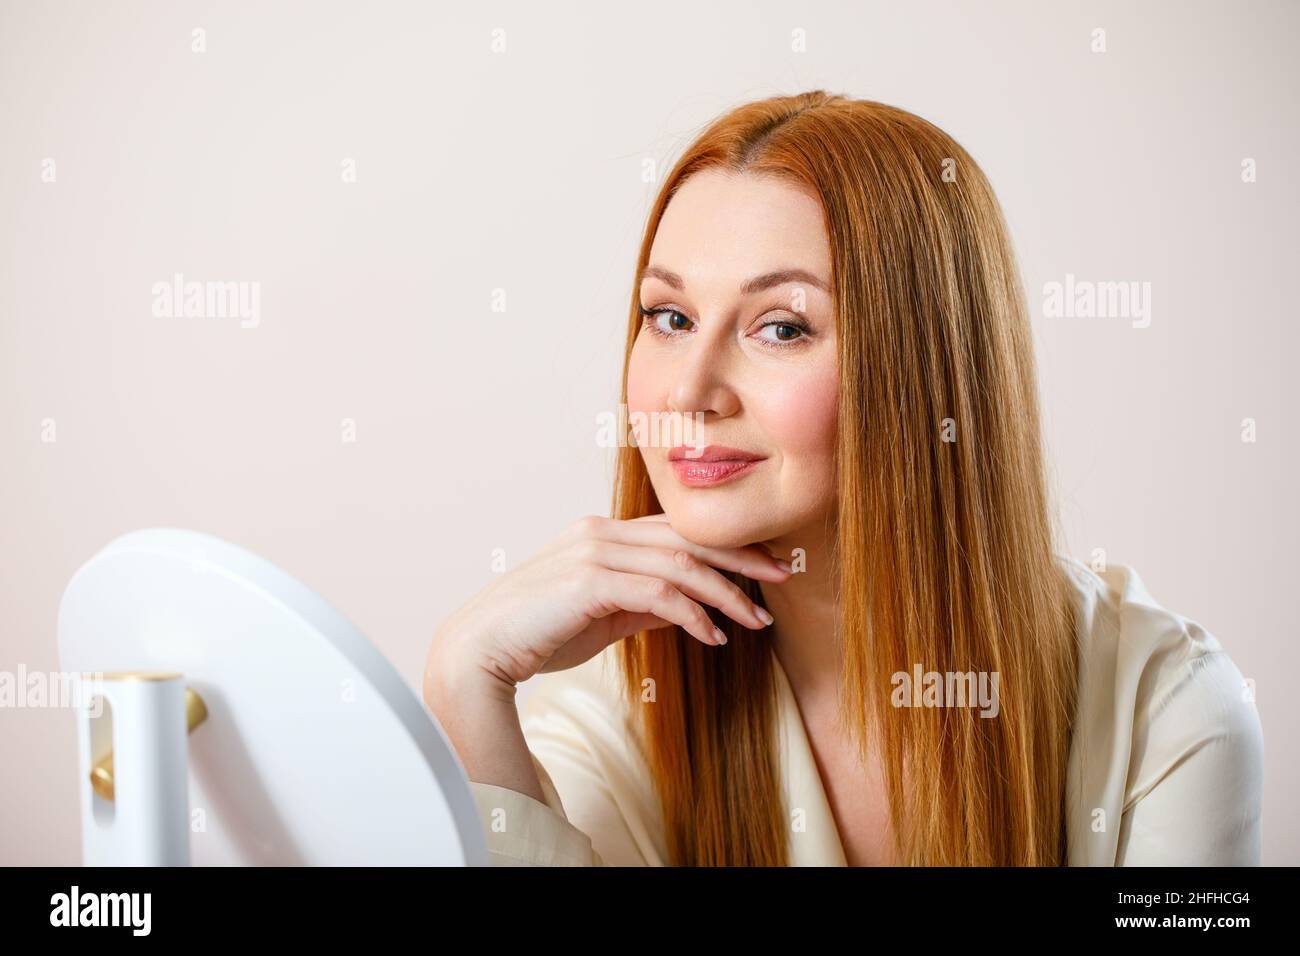 Retrato de una mujer adulta. La mujer mira la cámara y sonríe. Foto de stock